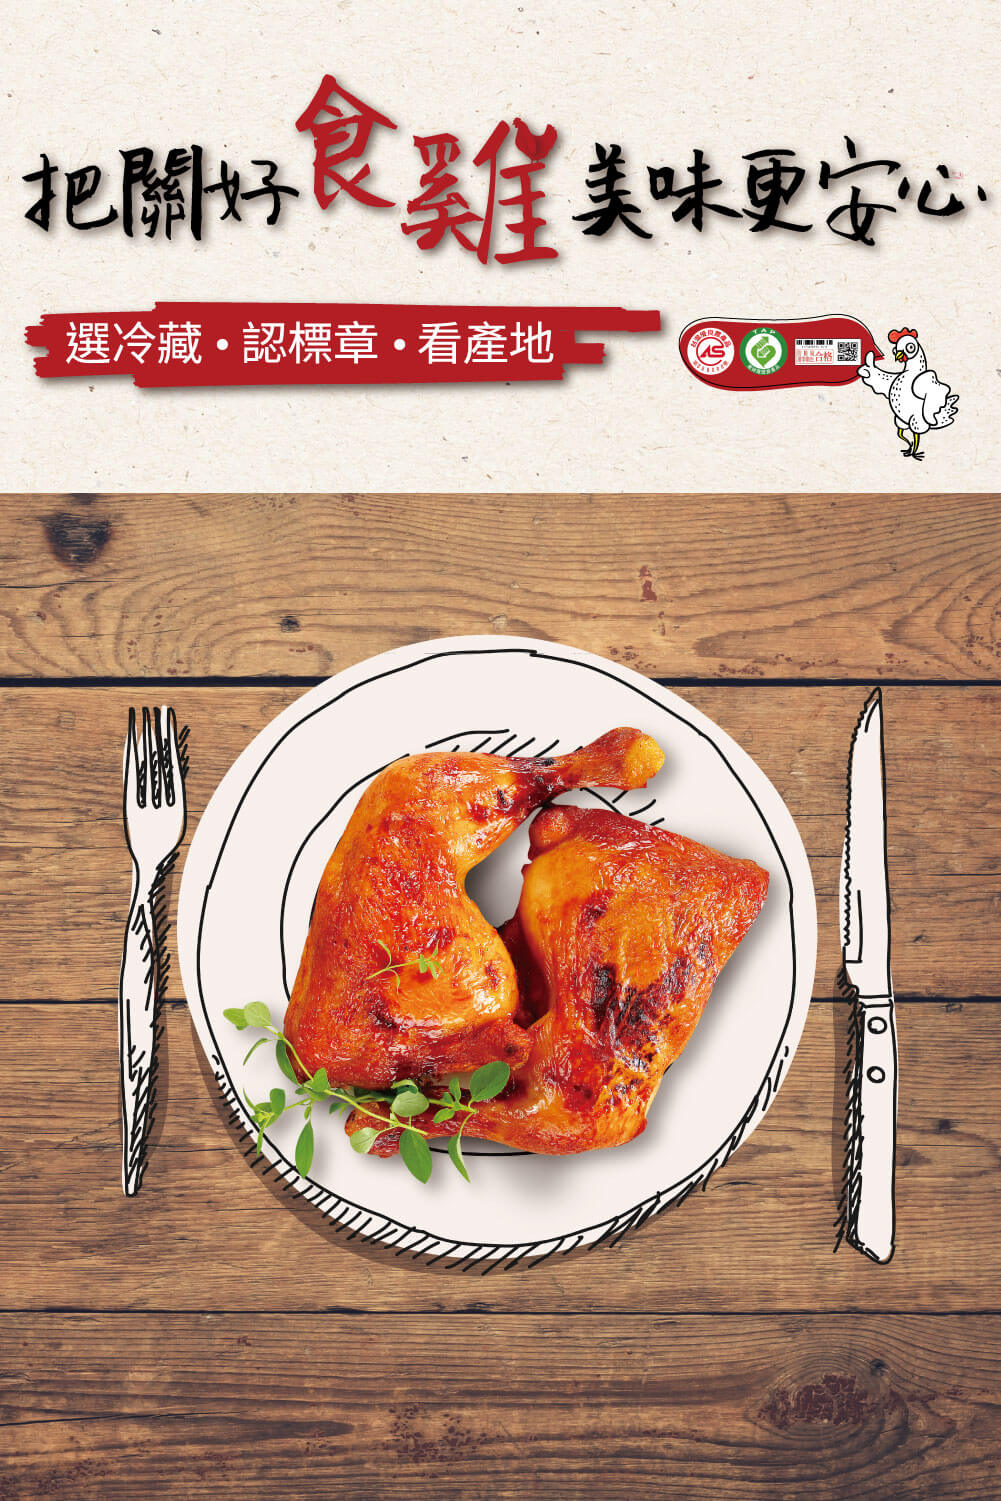 優良台灣產白肉雞宣傳推廣